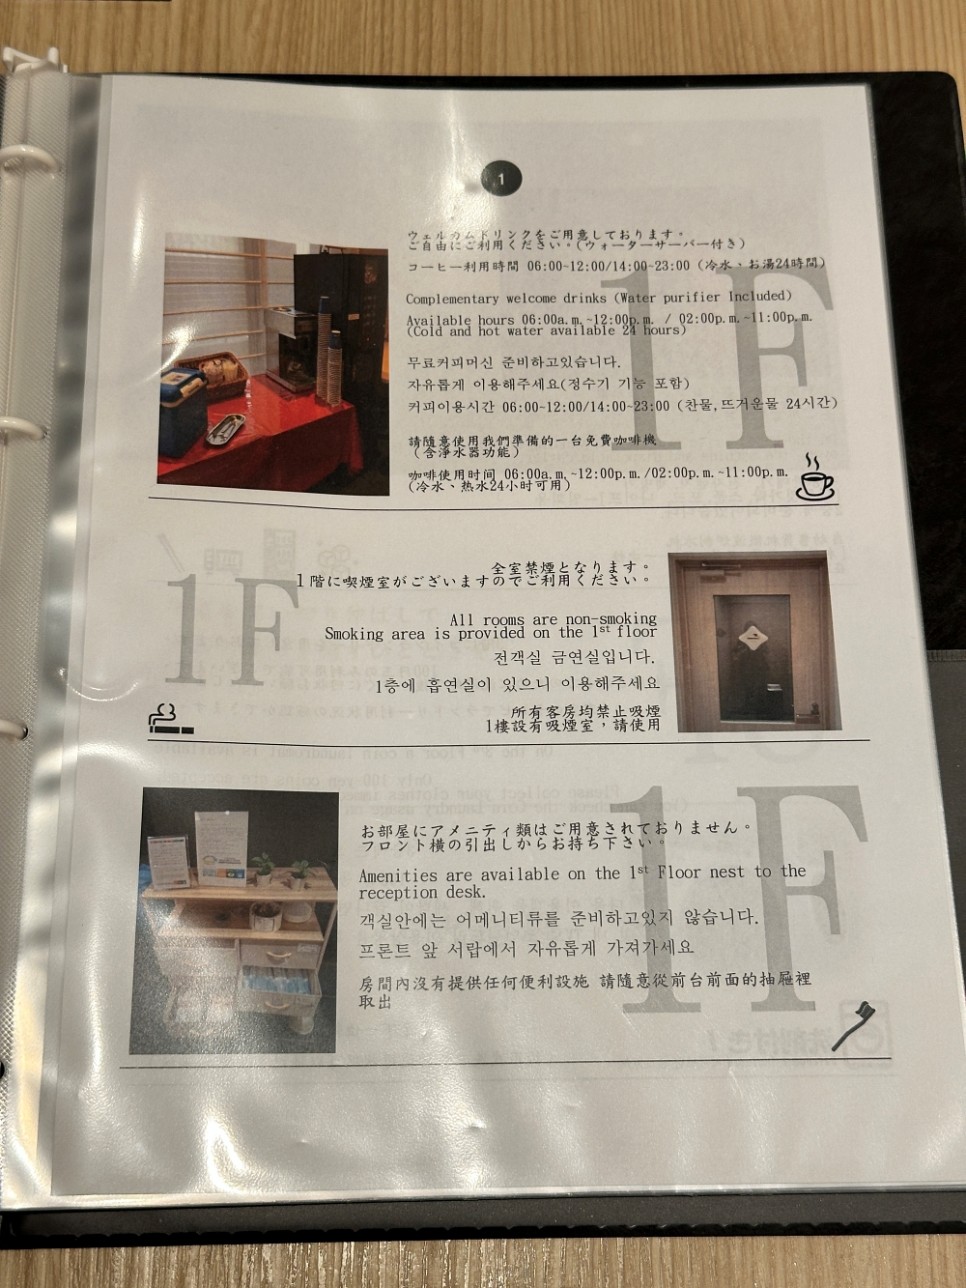 후쿠오카 하카타 1인 가성비 숙소 추천 호텔 토리피토 하카타 기온 위치 조식